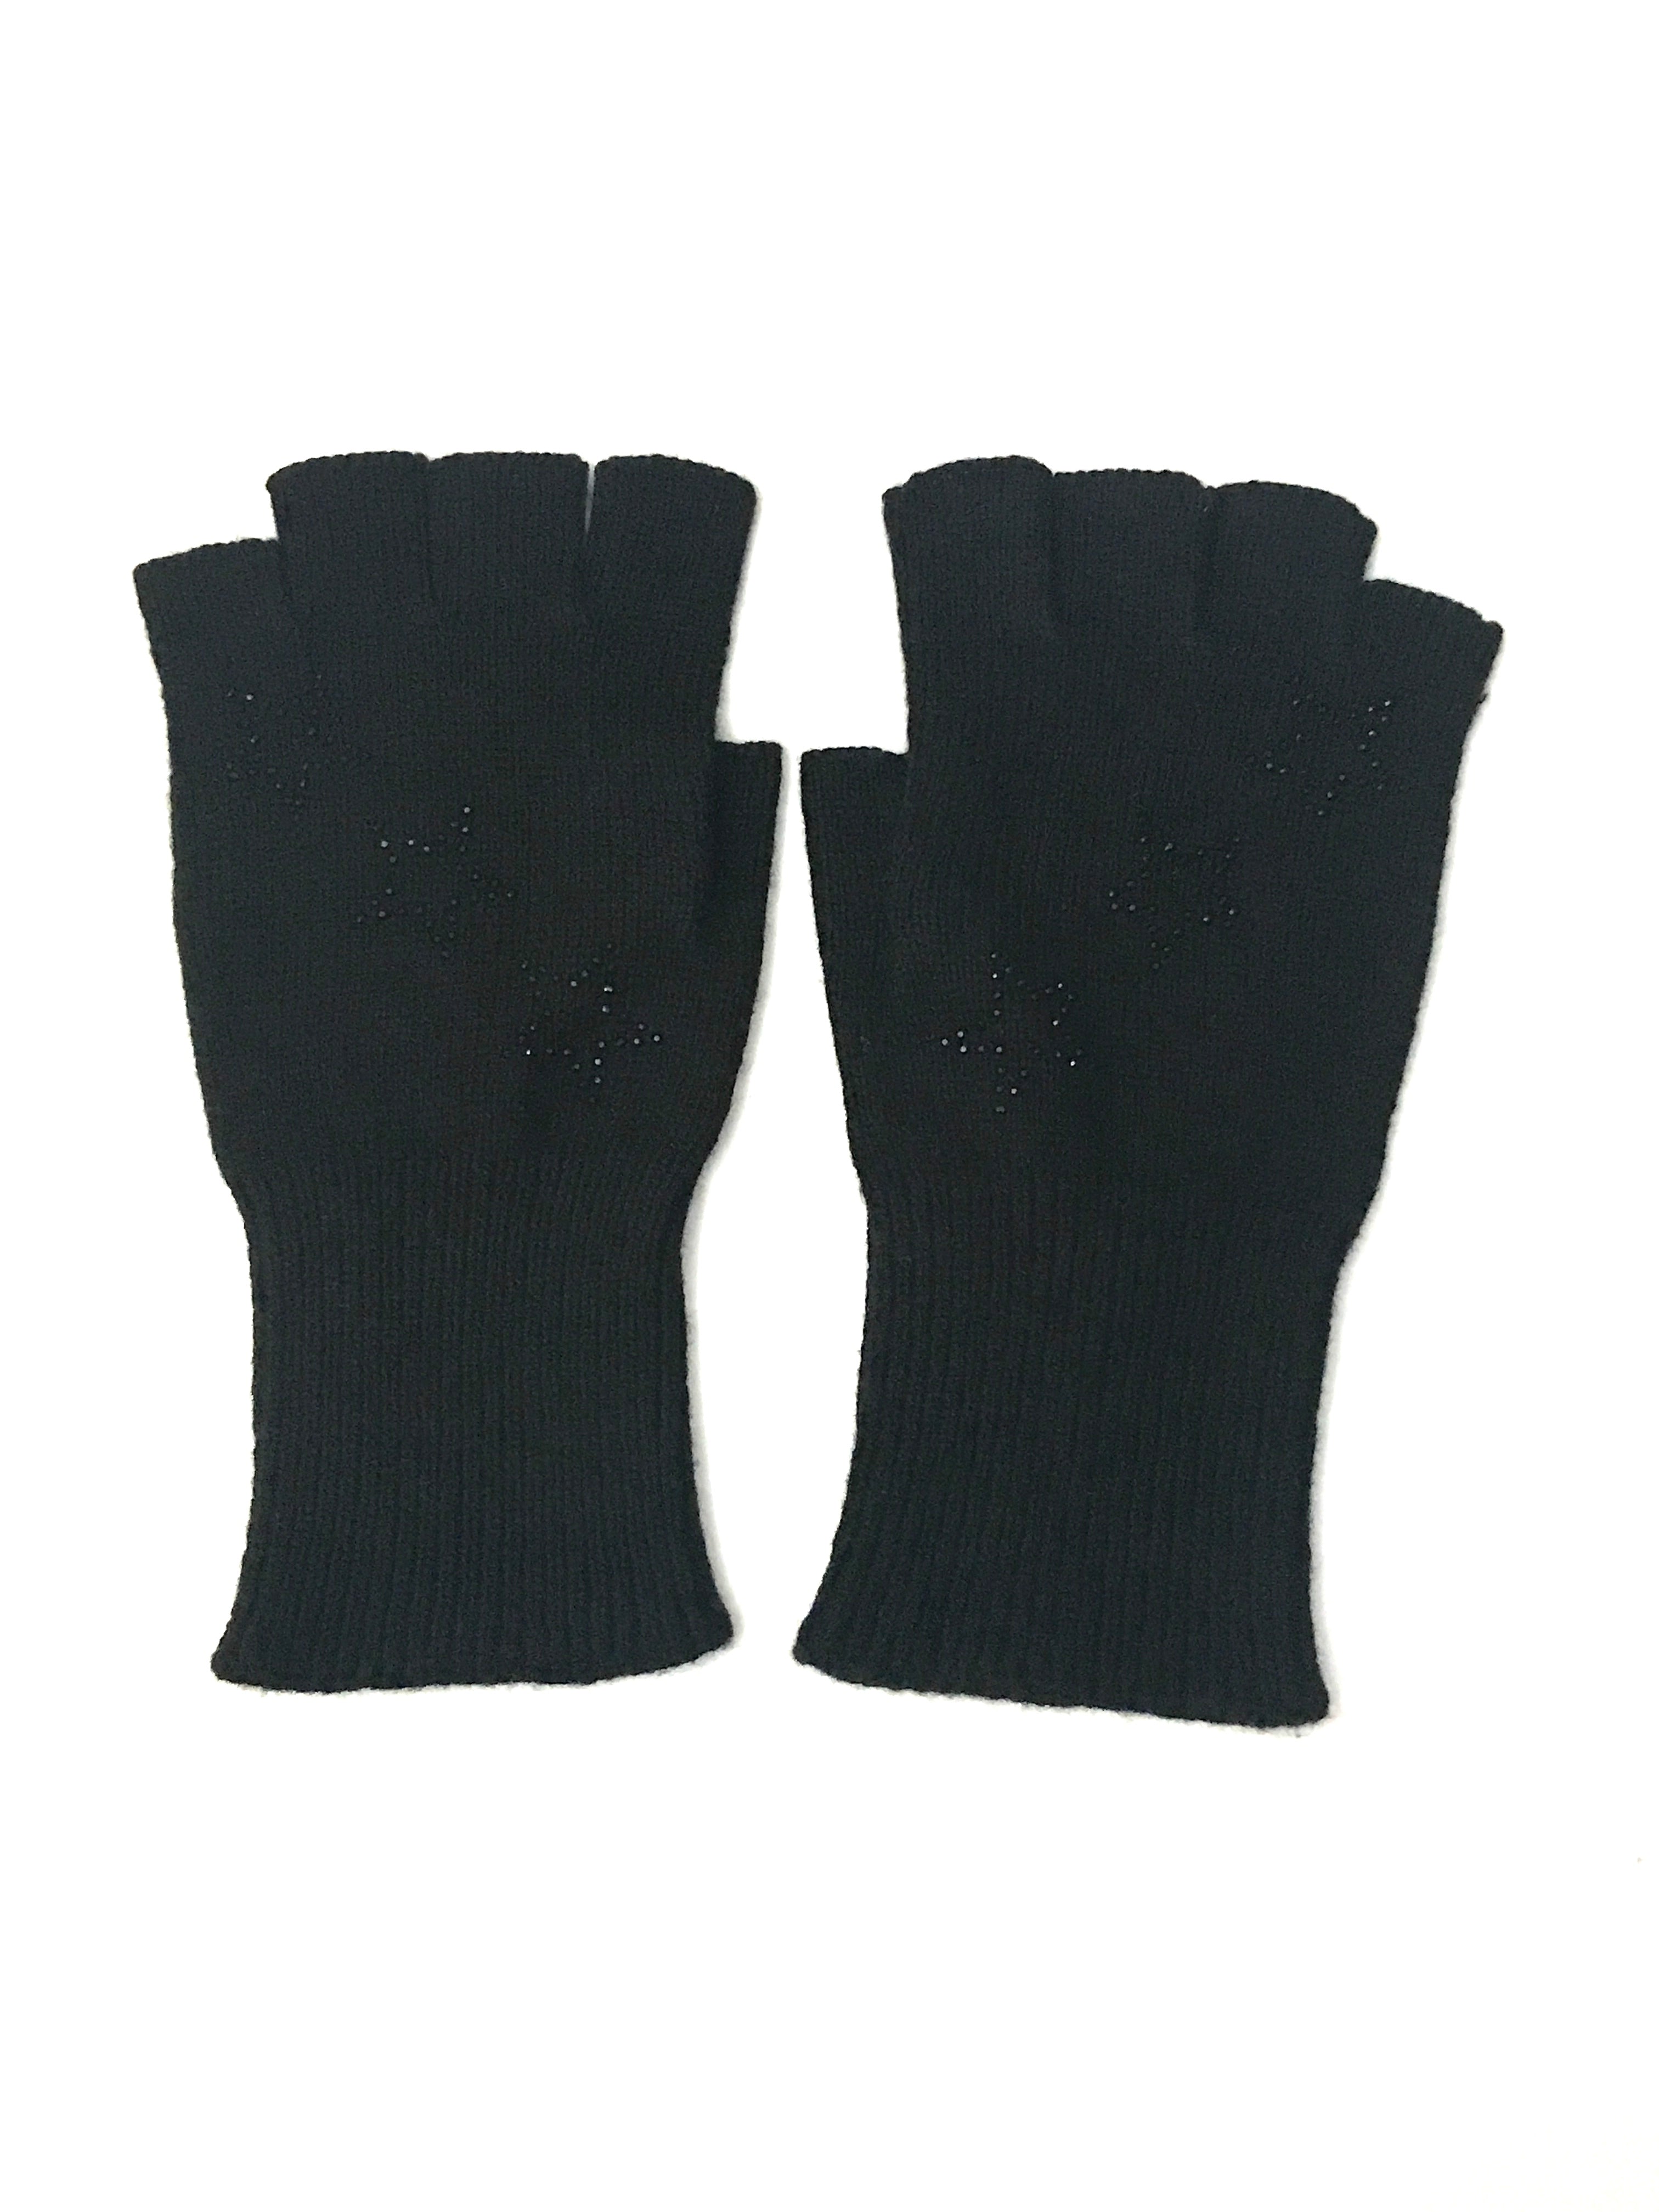 star fingerless gloves black/black stars